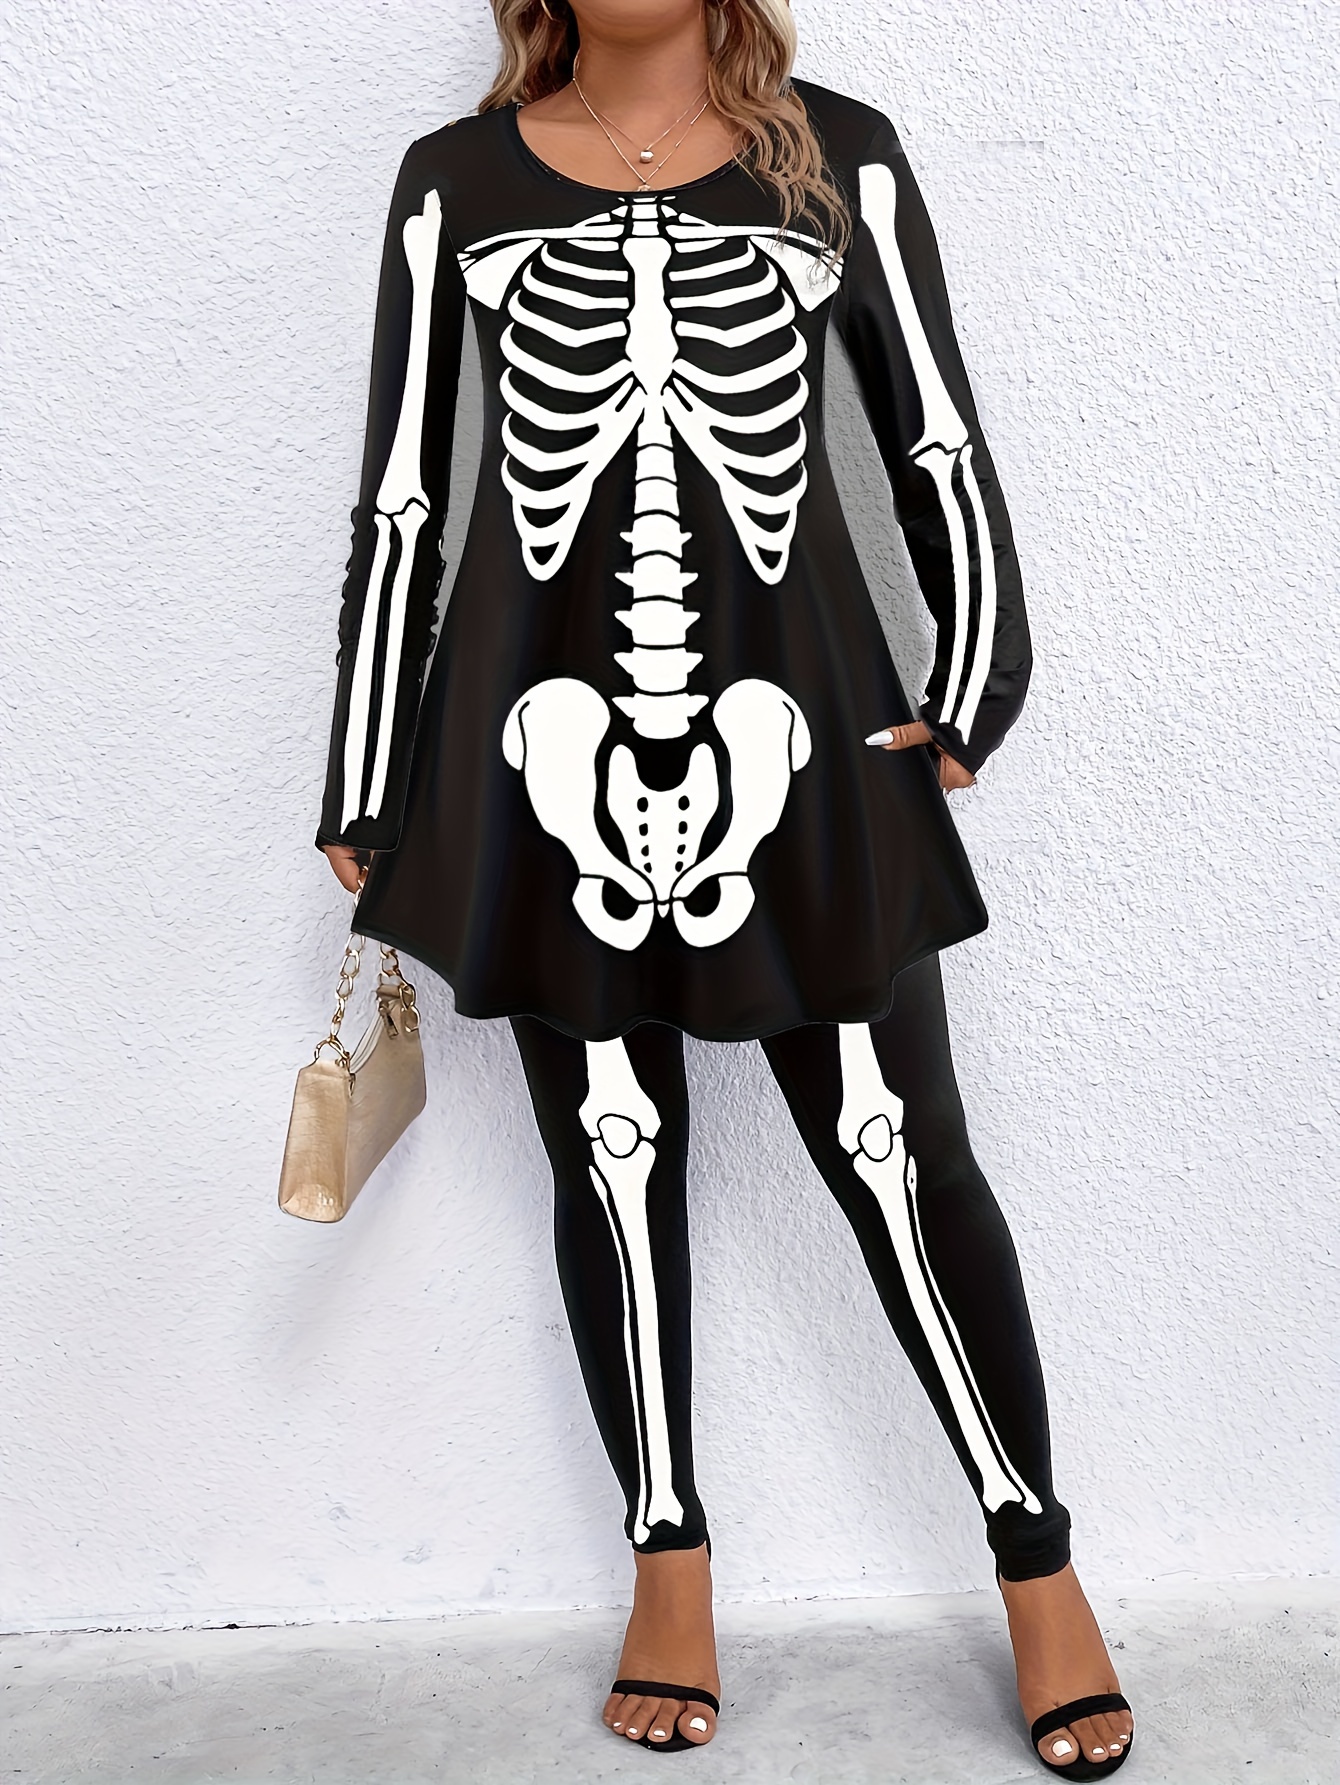 Halloween Costume Skeleton Bodysuit Hoodies, Fluorescent Vampire